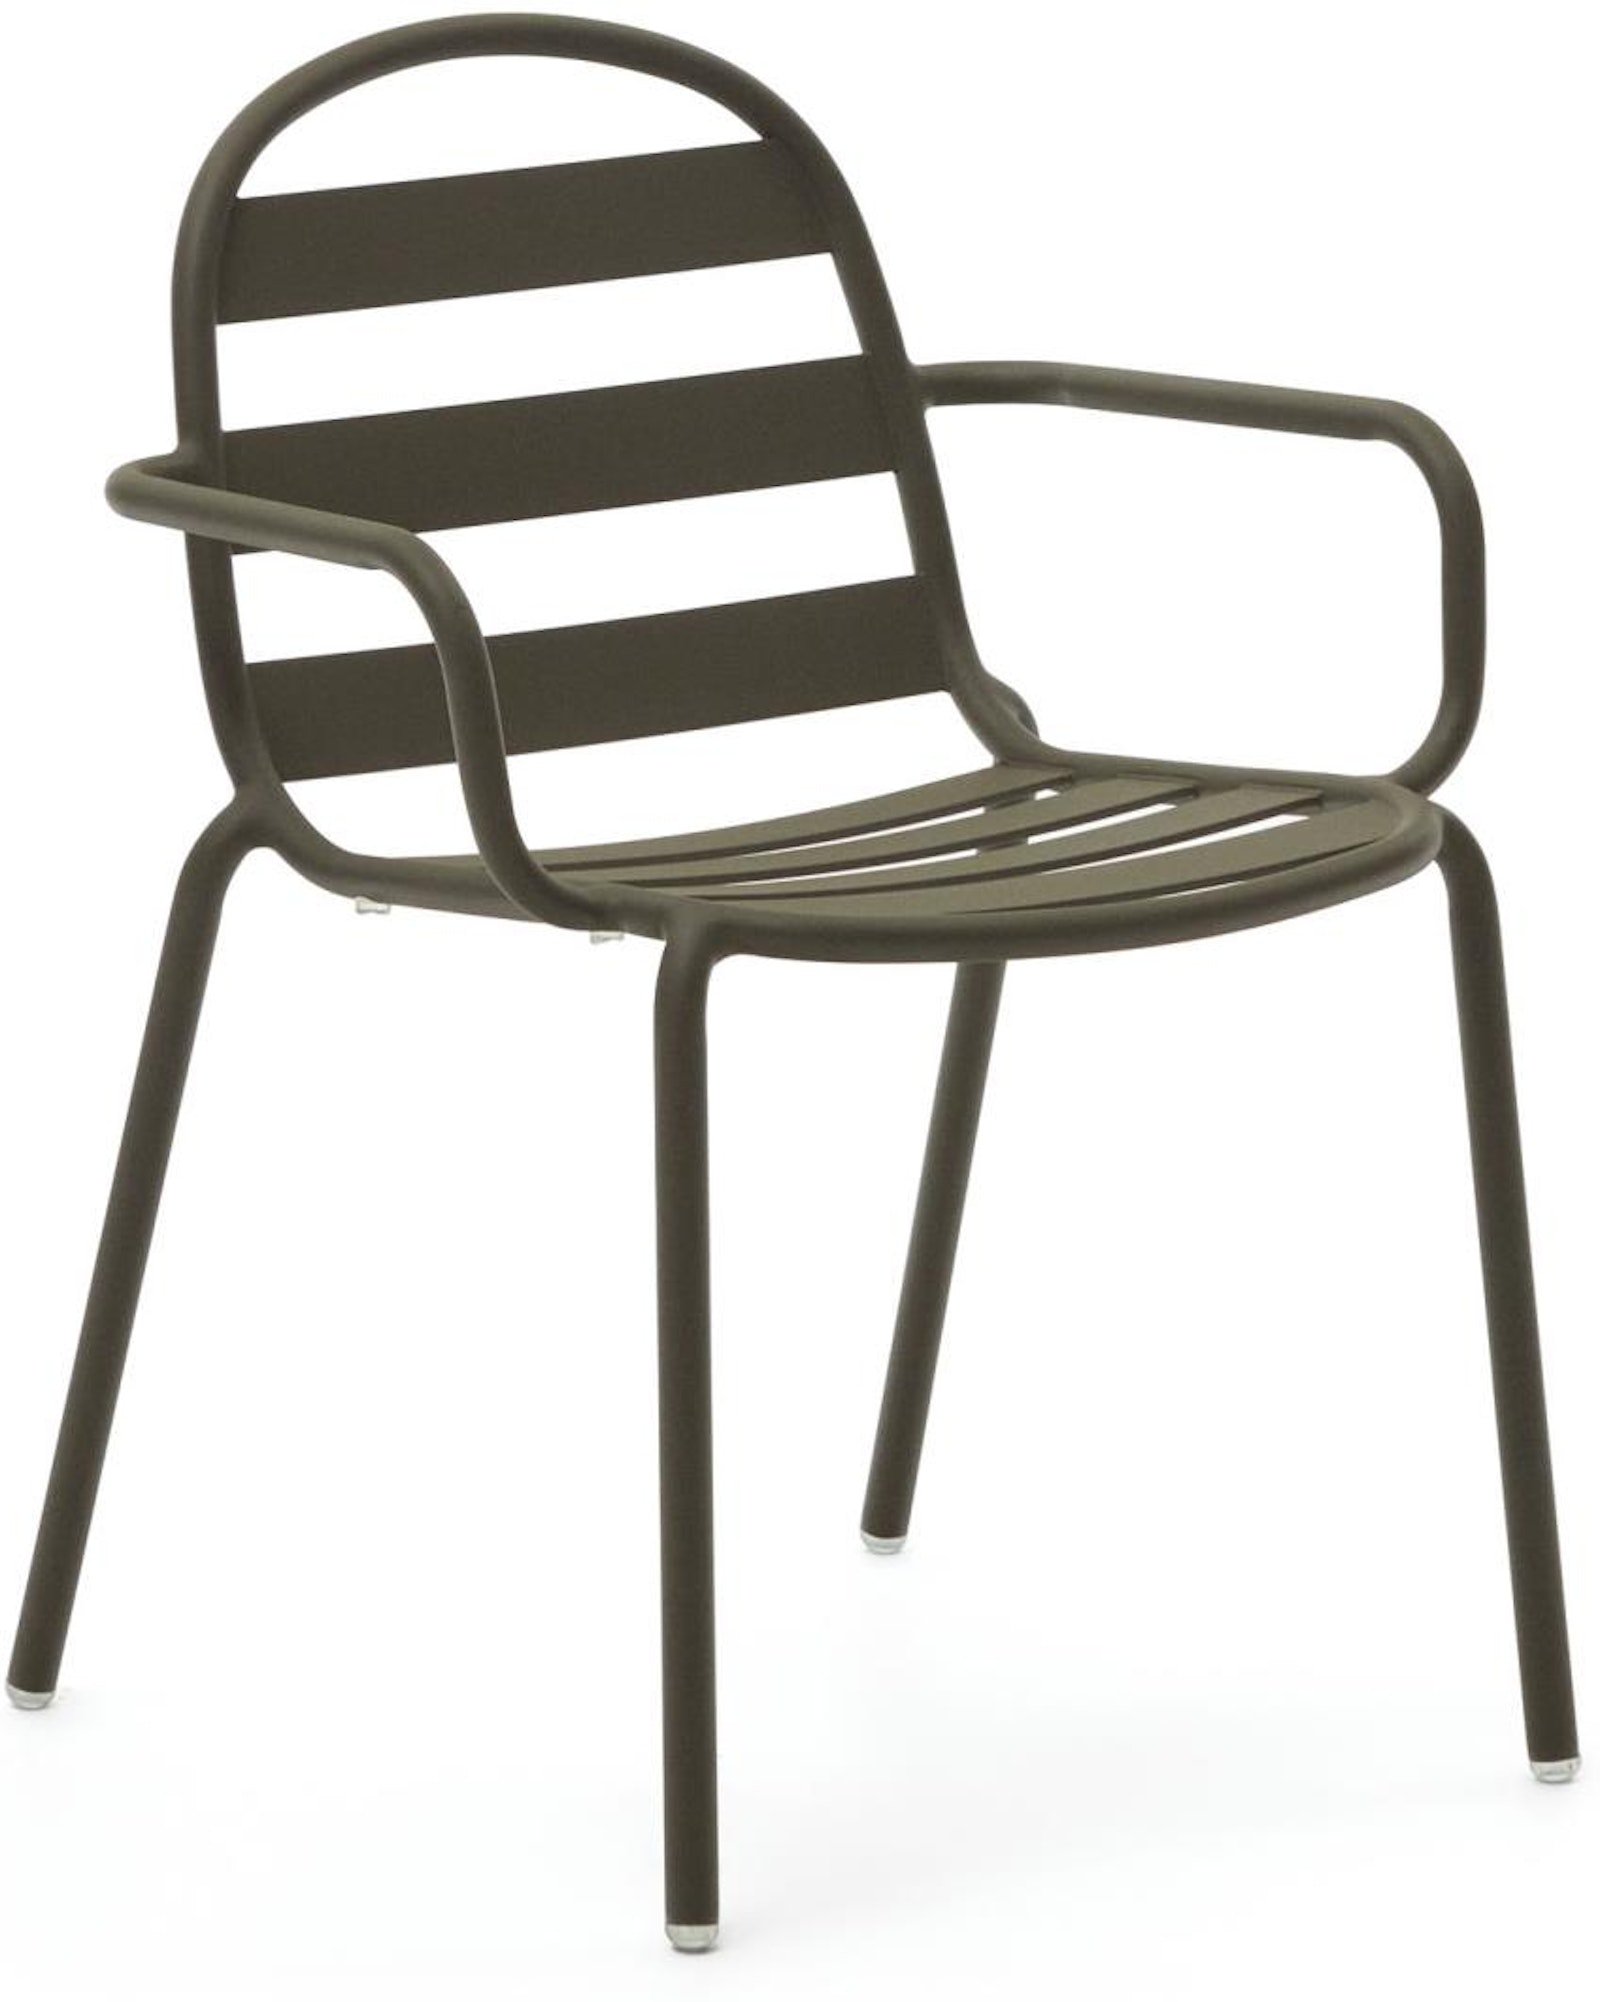 6: Joncols, Udendørs stol, moderne, nordisk, metal by Laforma (H: 82 cm. x B: 61 cm. x L: 58 cm., Grøn)